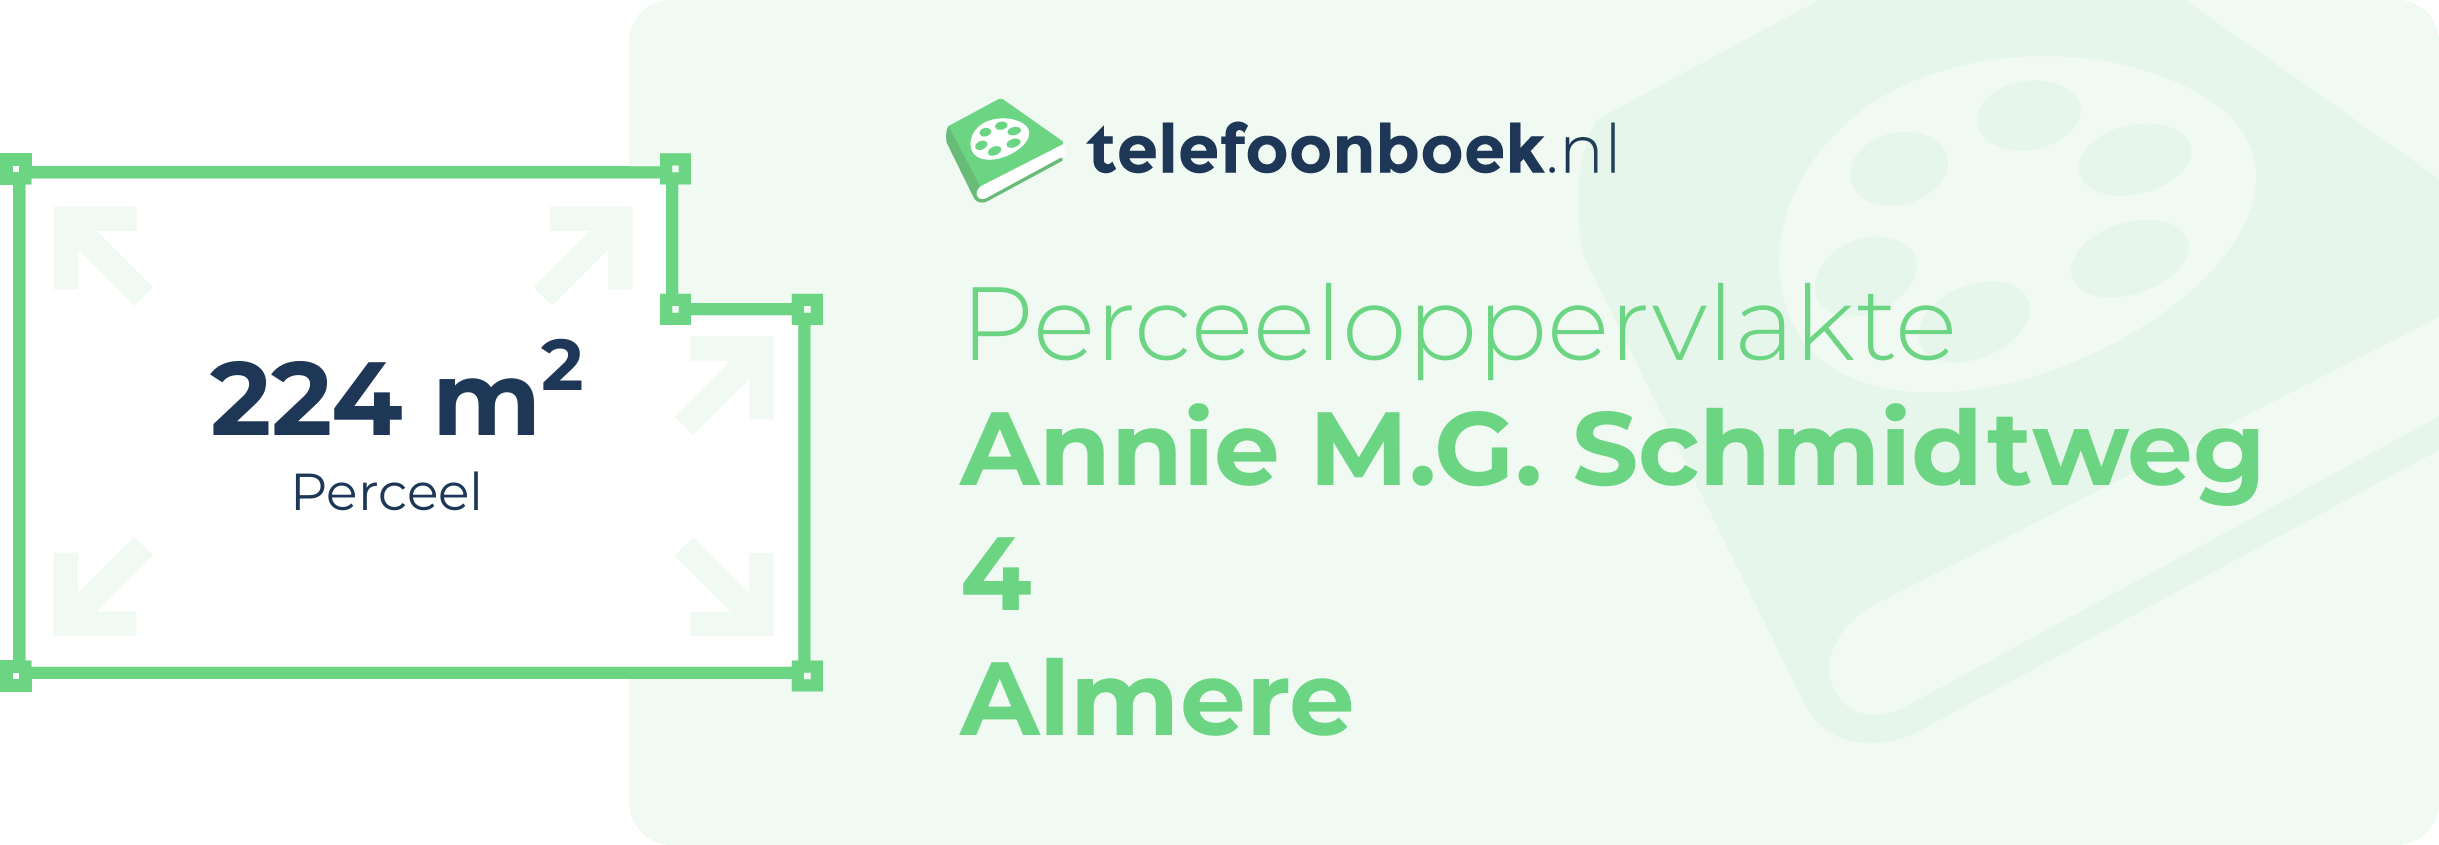 Perceeloppervlakte Annie M.G. Schmidtweg 4 Almere